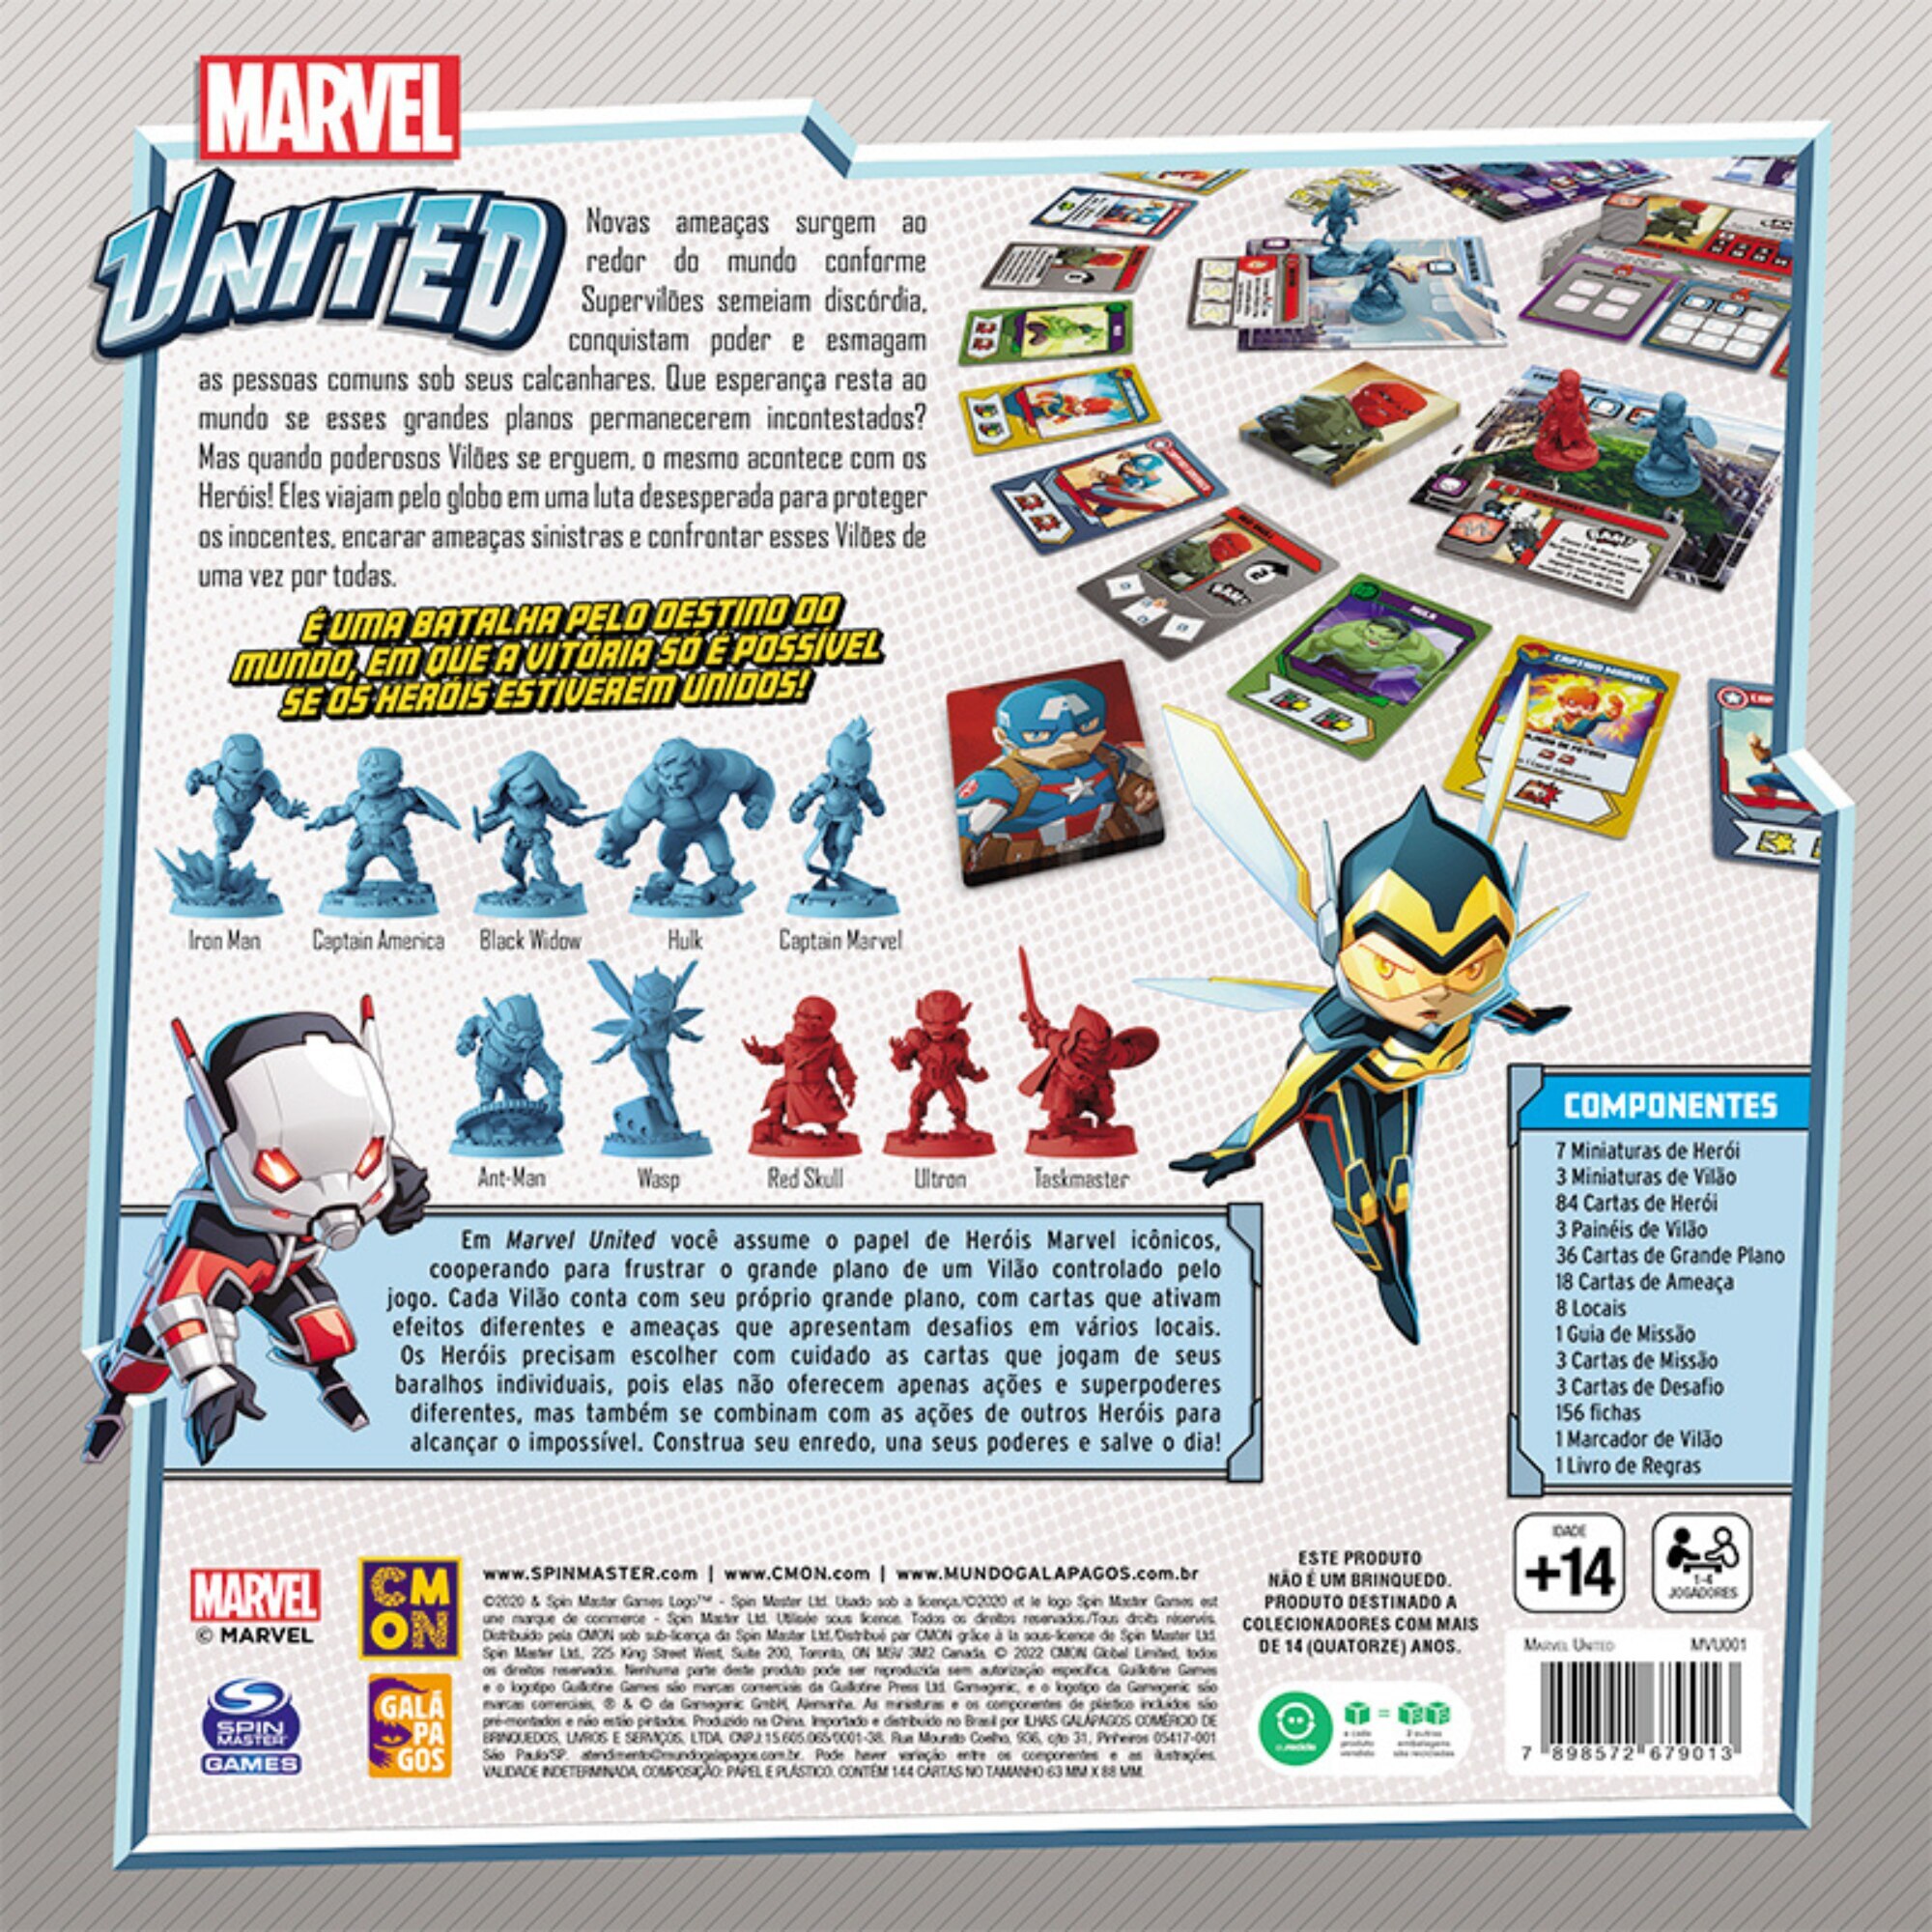 Marvel United - Regras e Gameplay - Jogatinas - Compara Jogos